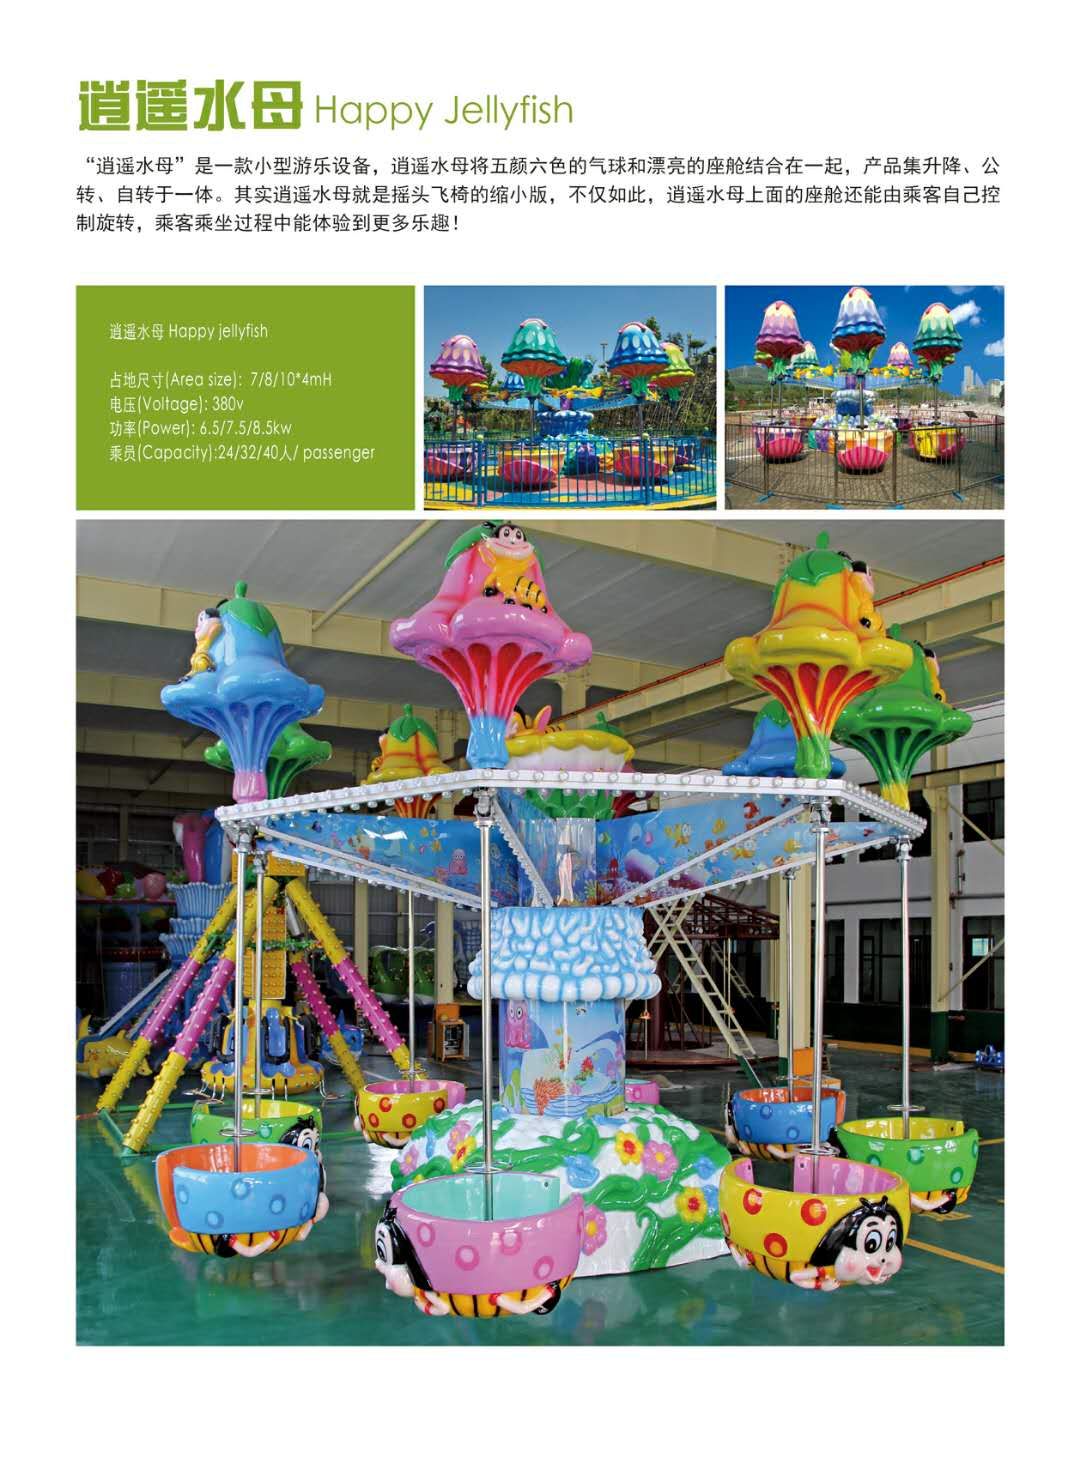 滑行龙新型儿童游乐设备 郑州大洋专业生产 公园大型户外游乐滑行龙示例图16